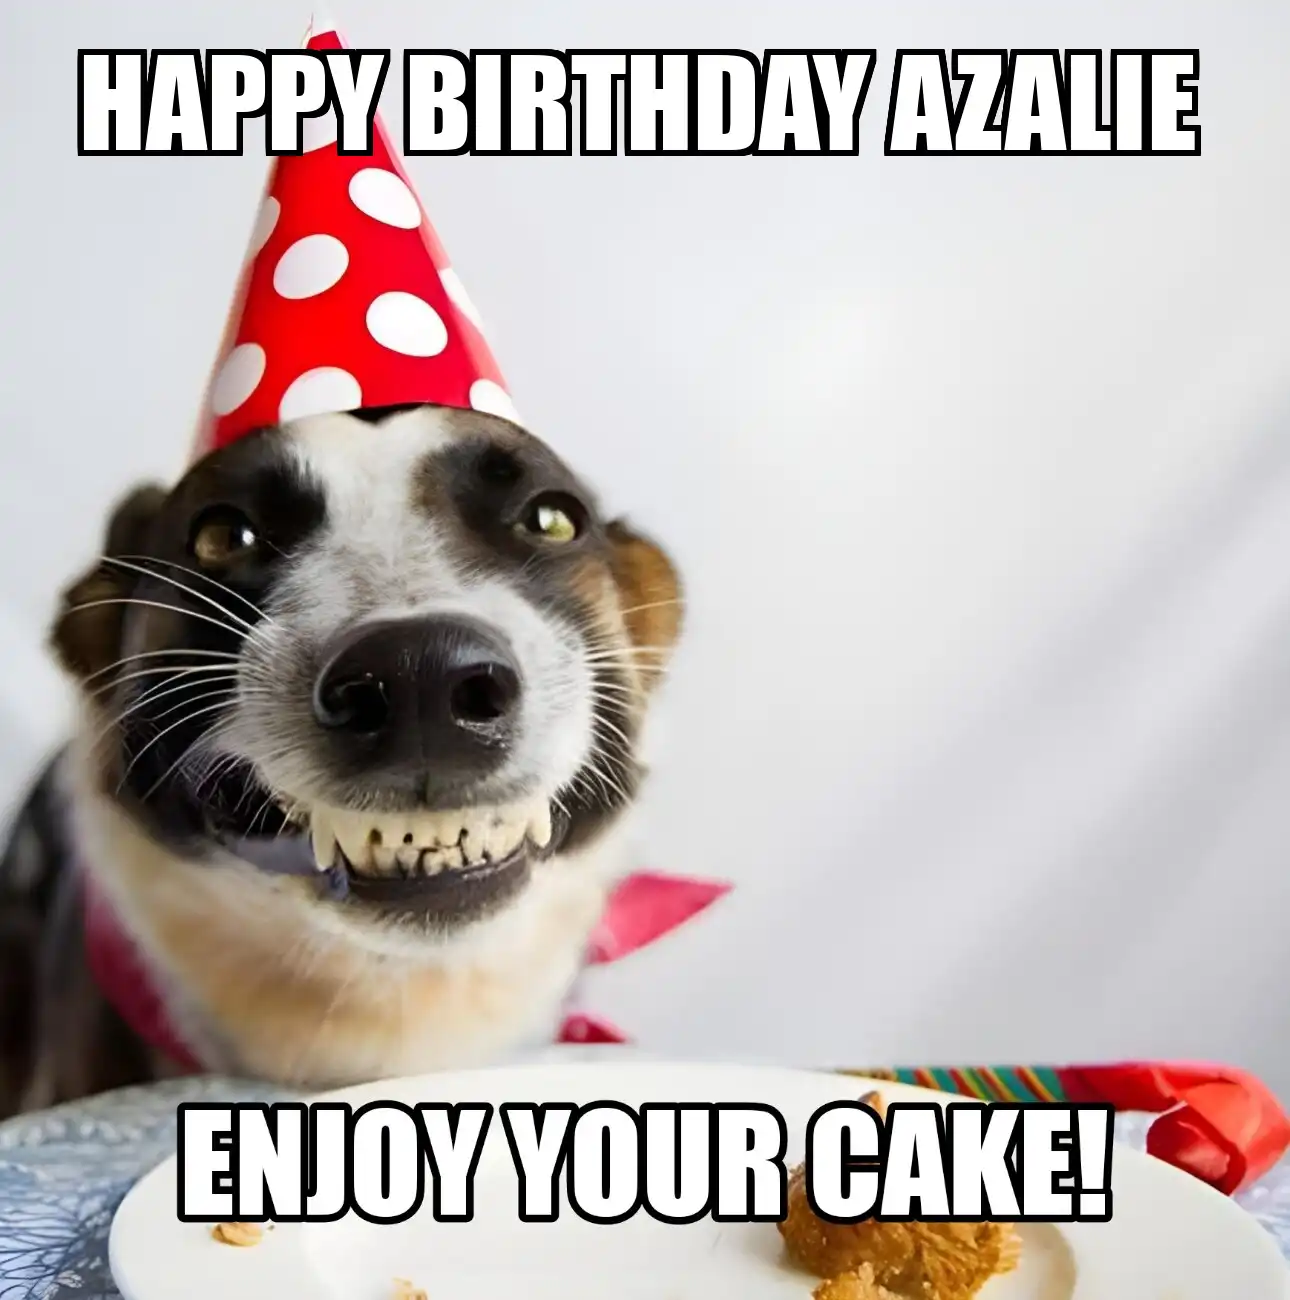 Happy Birthday Azalie Enjoy Your Cake Dog Meme